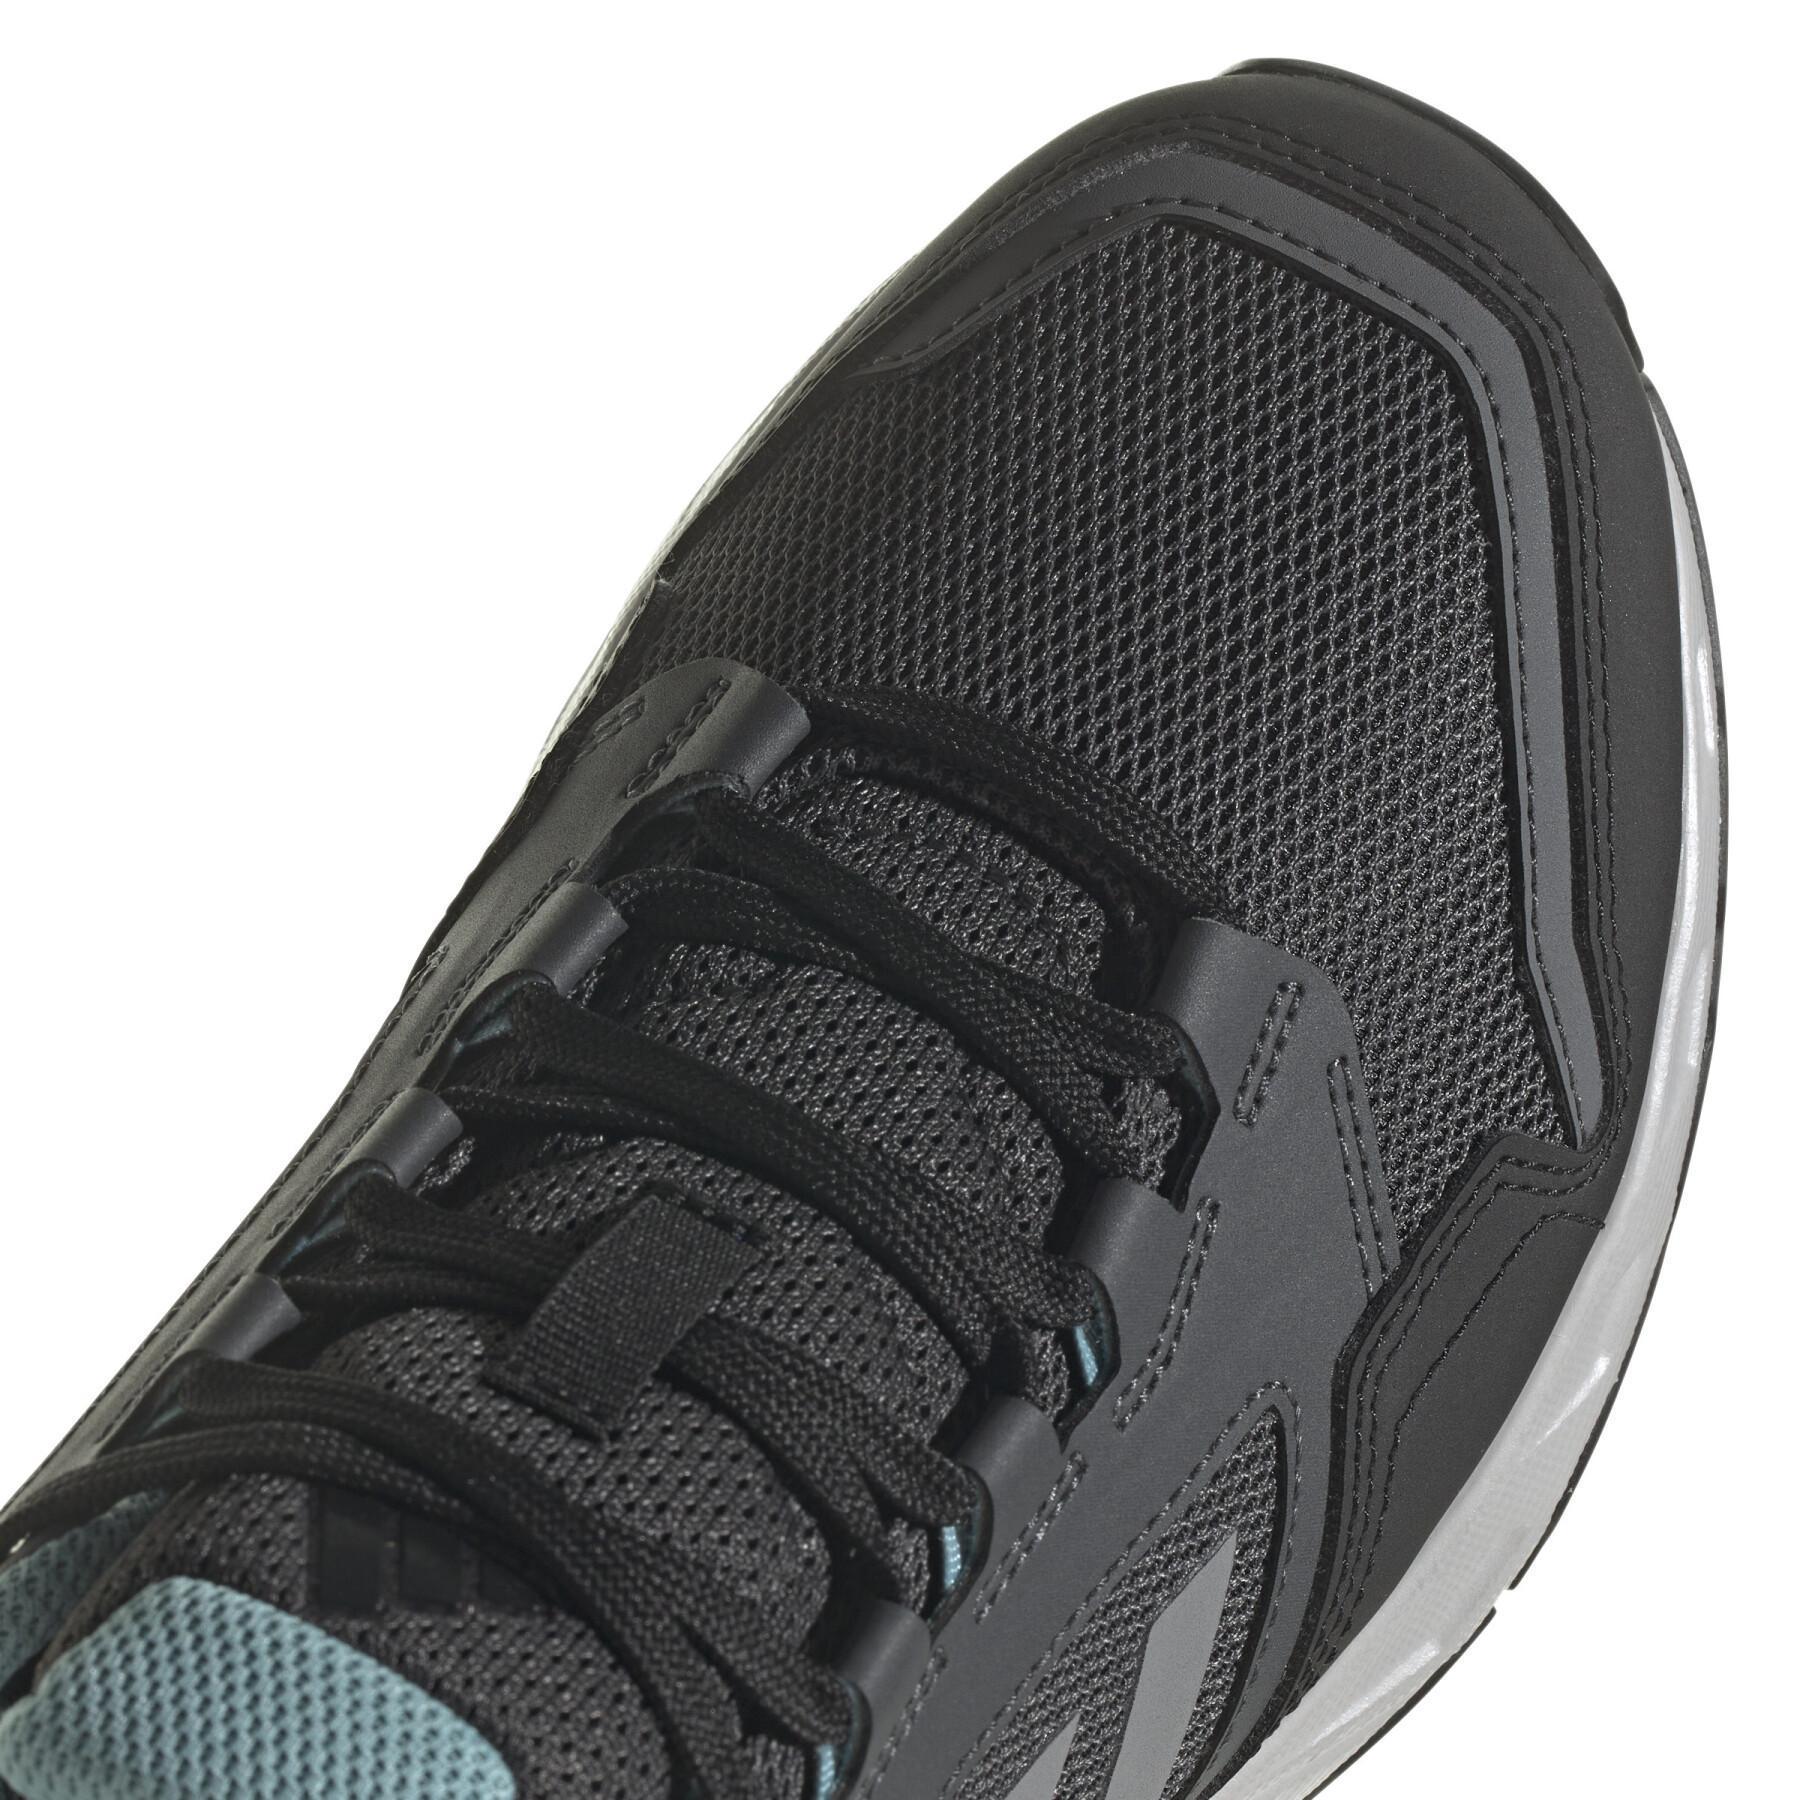 Women's trail shoes adidas Tracerocker 2.0